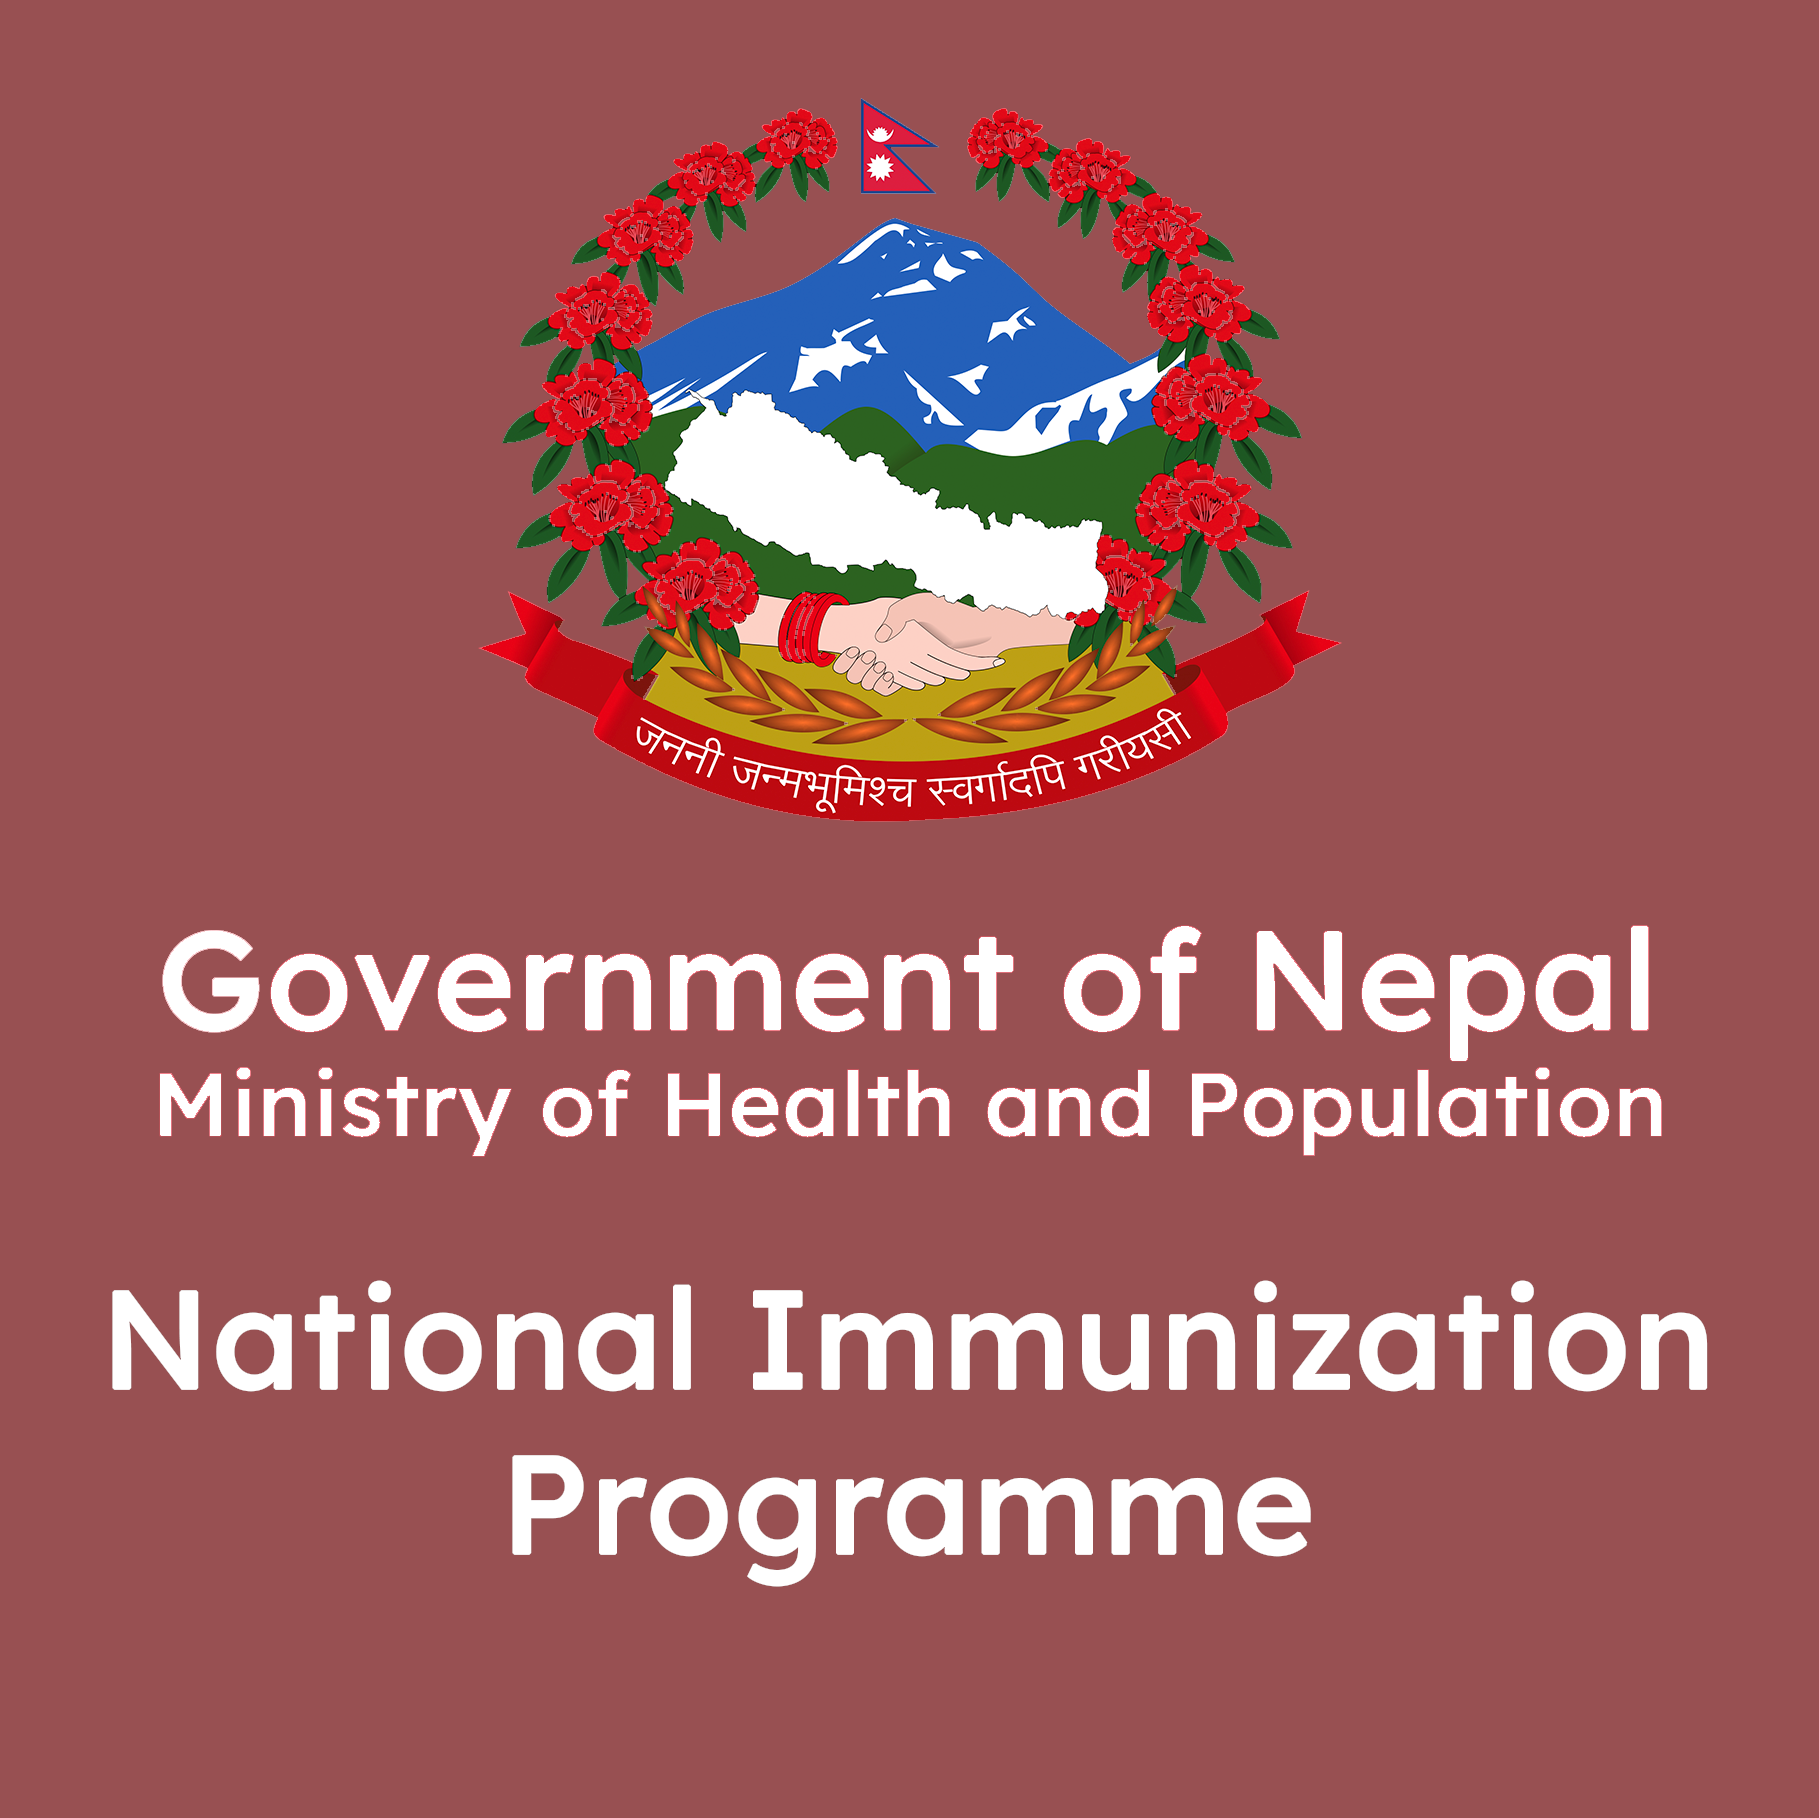 National Immunization Programme